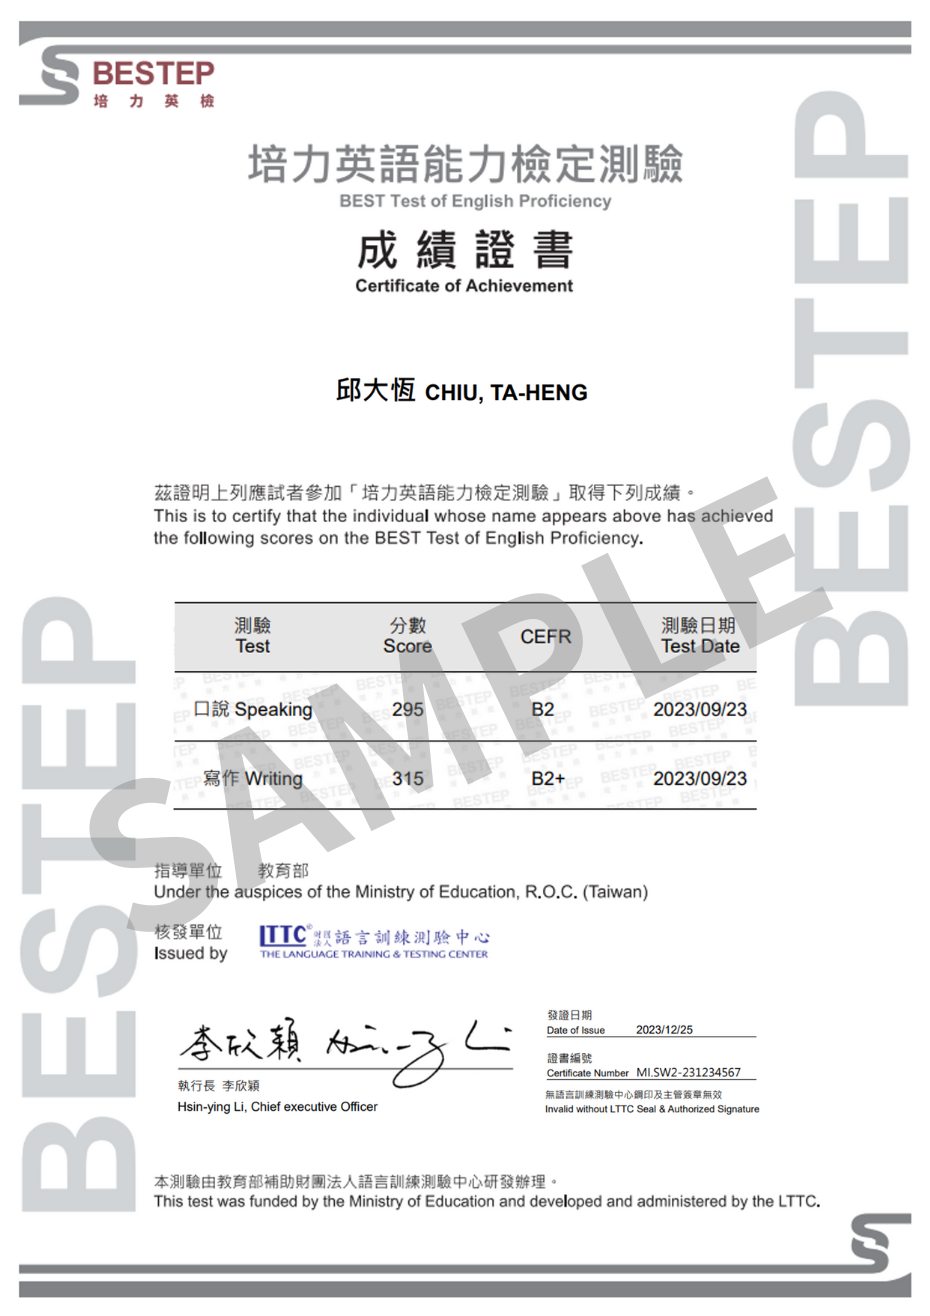 Certificate Sample